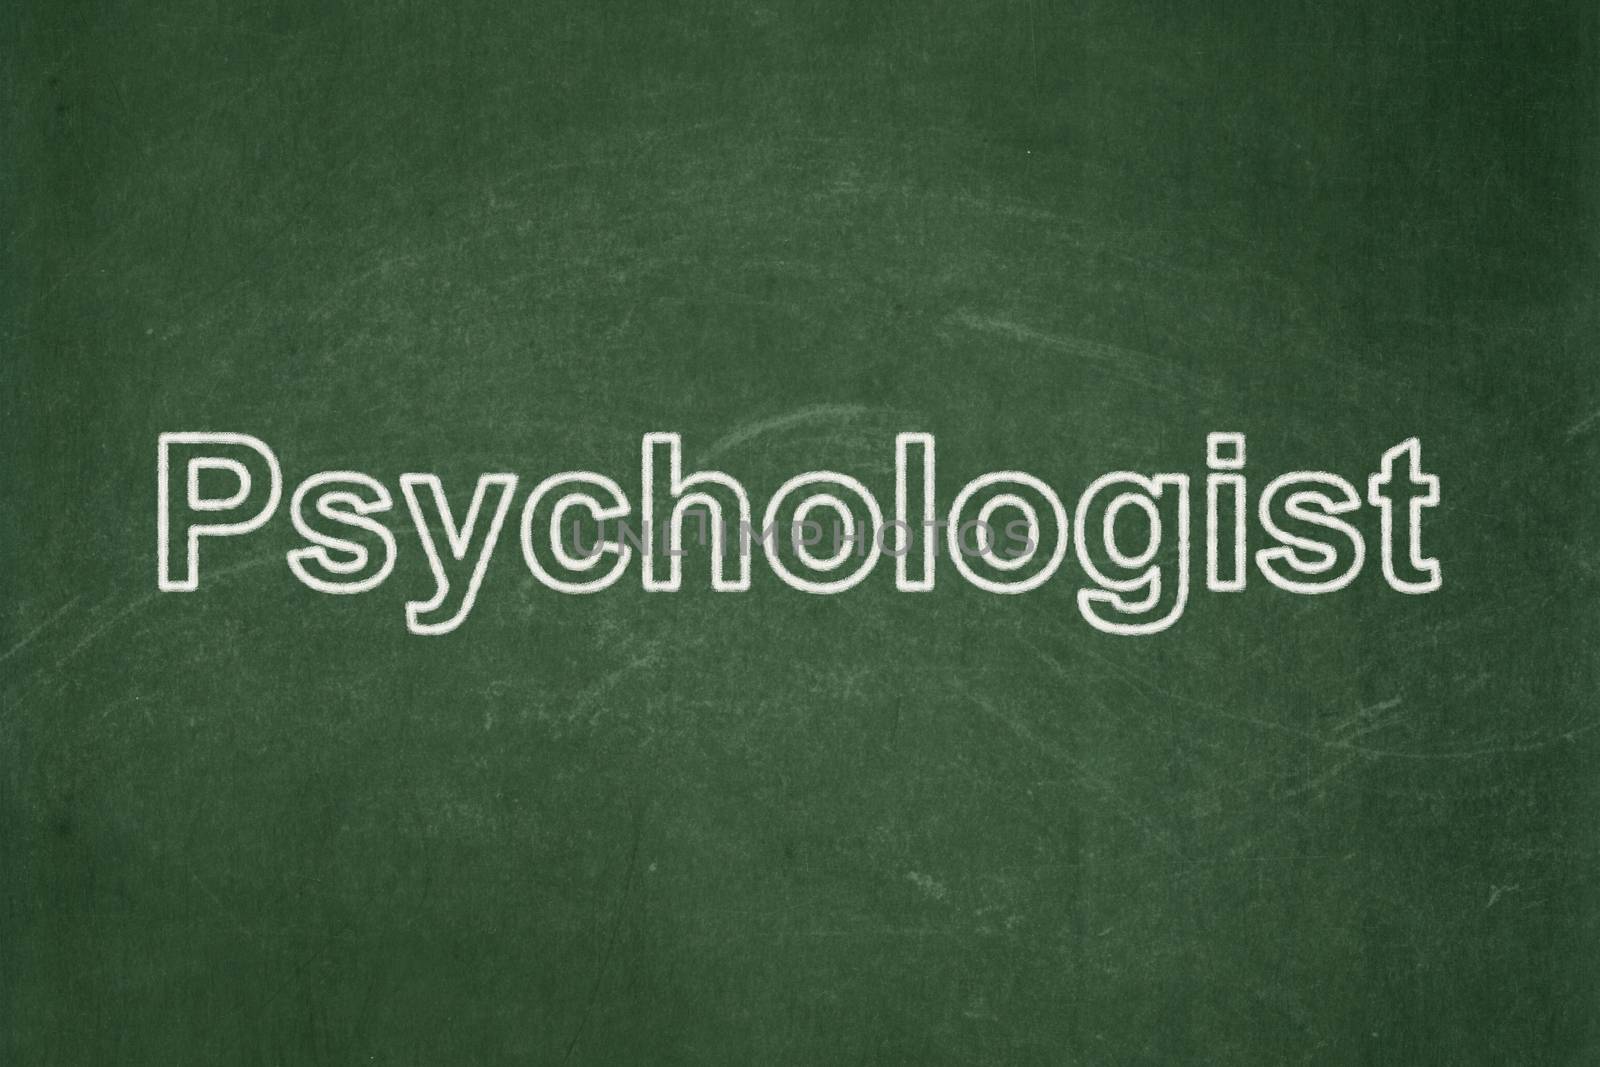 Medicine concept: Psychologist on chalkboard background by maxkabakov